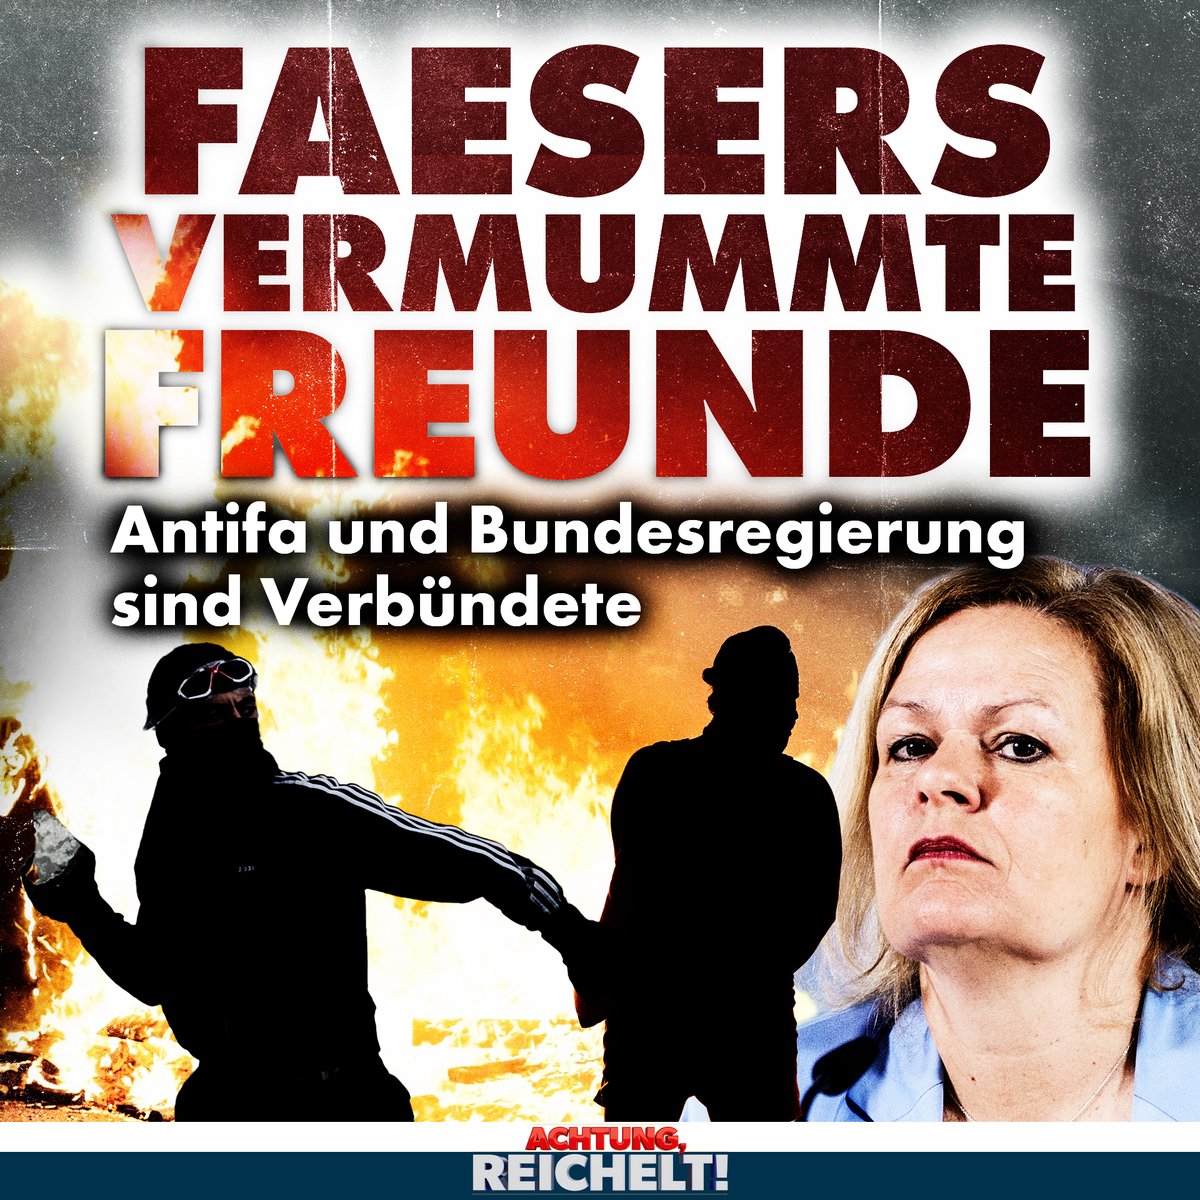 Mit linksextremer Gewalt hat Innenministerin Nancy #Faeser kein Problem. Stattdessen tun sie und ihre Genossen alles dafür, uns einzureden, dass Gewalt gegen Politiker eine rechtsextreme Seuche wäre.
nius.de/Kommentar/faes…